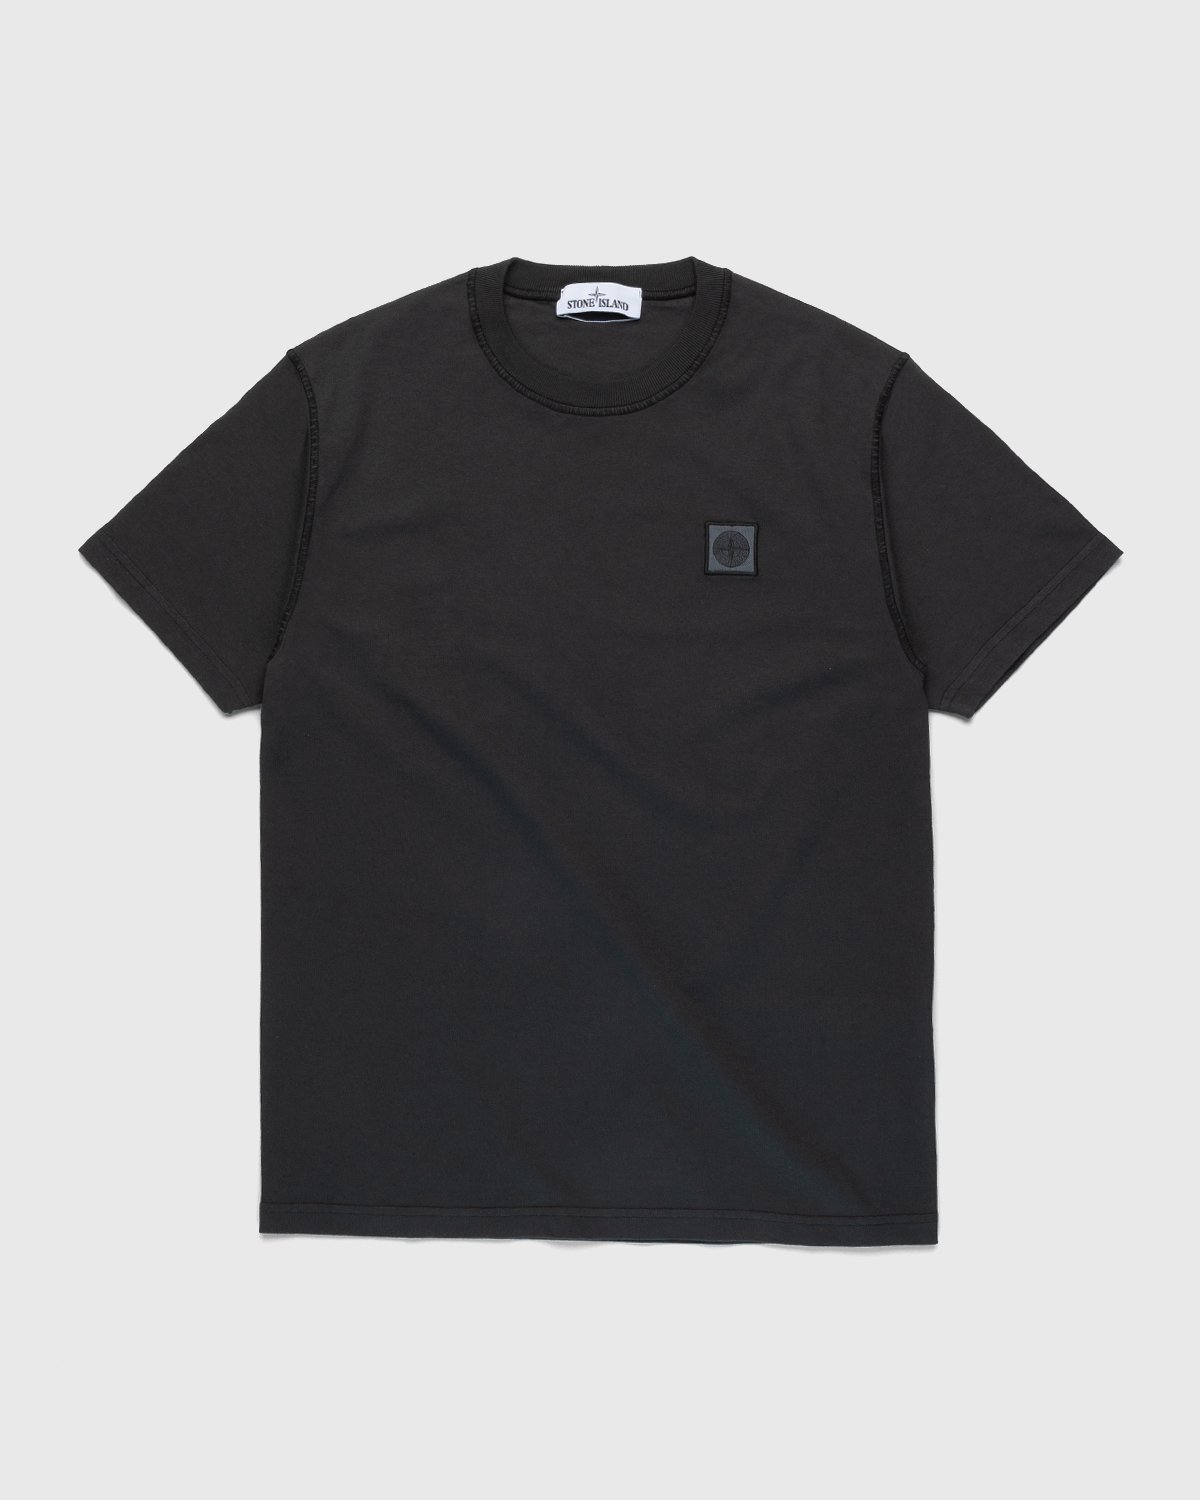 Stone Island - T-Shirt Charcoal - Clothing - Grey - Image 1